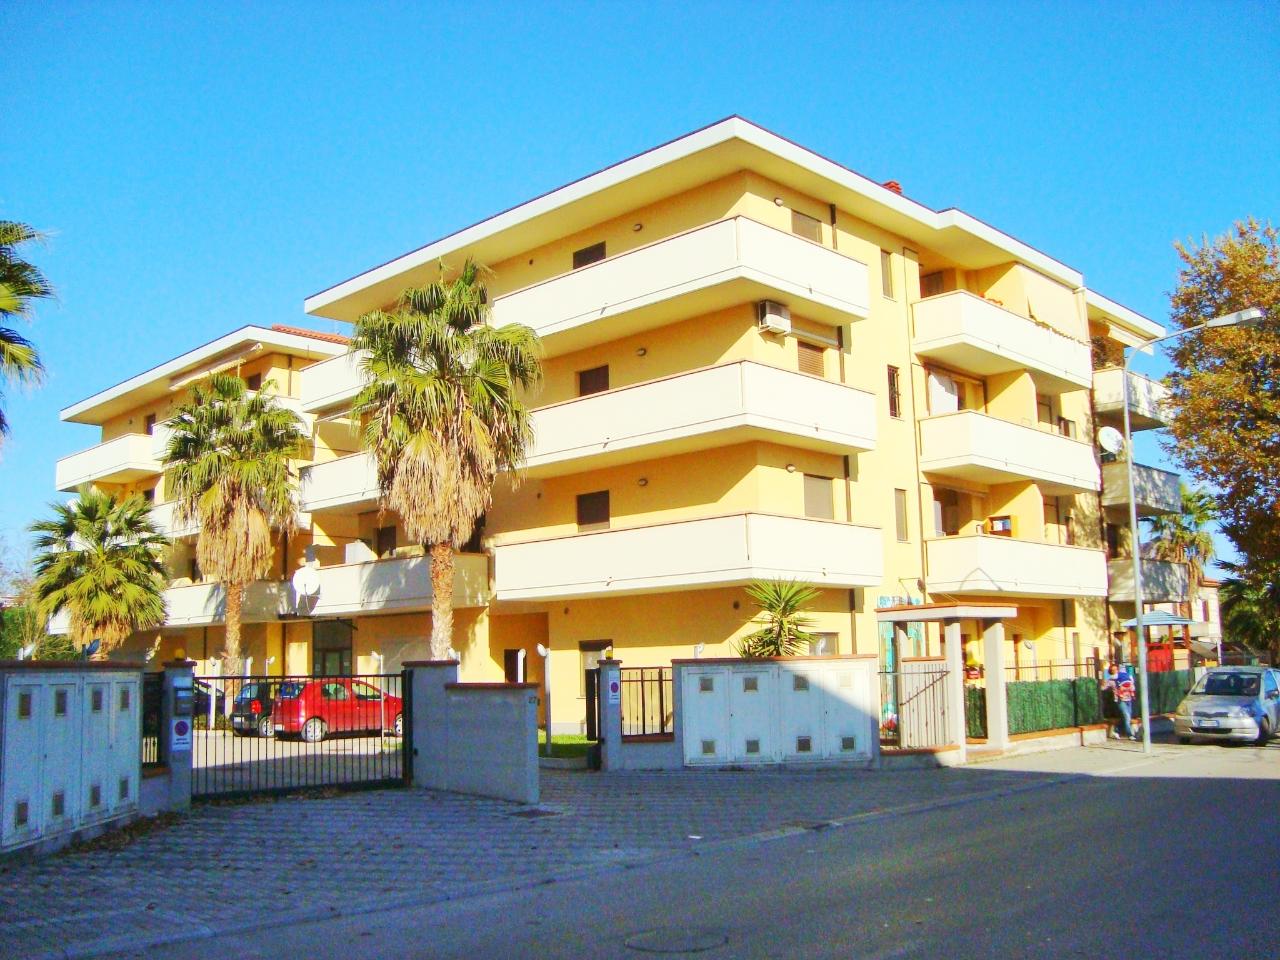 Appartamento in vendita a Manoppello